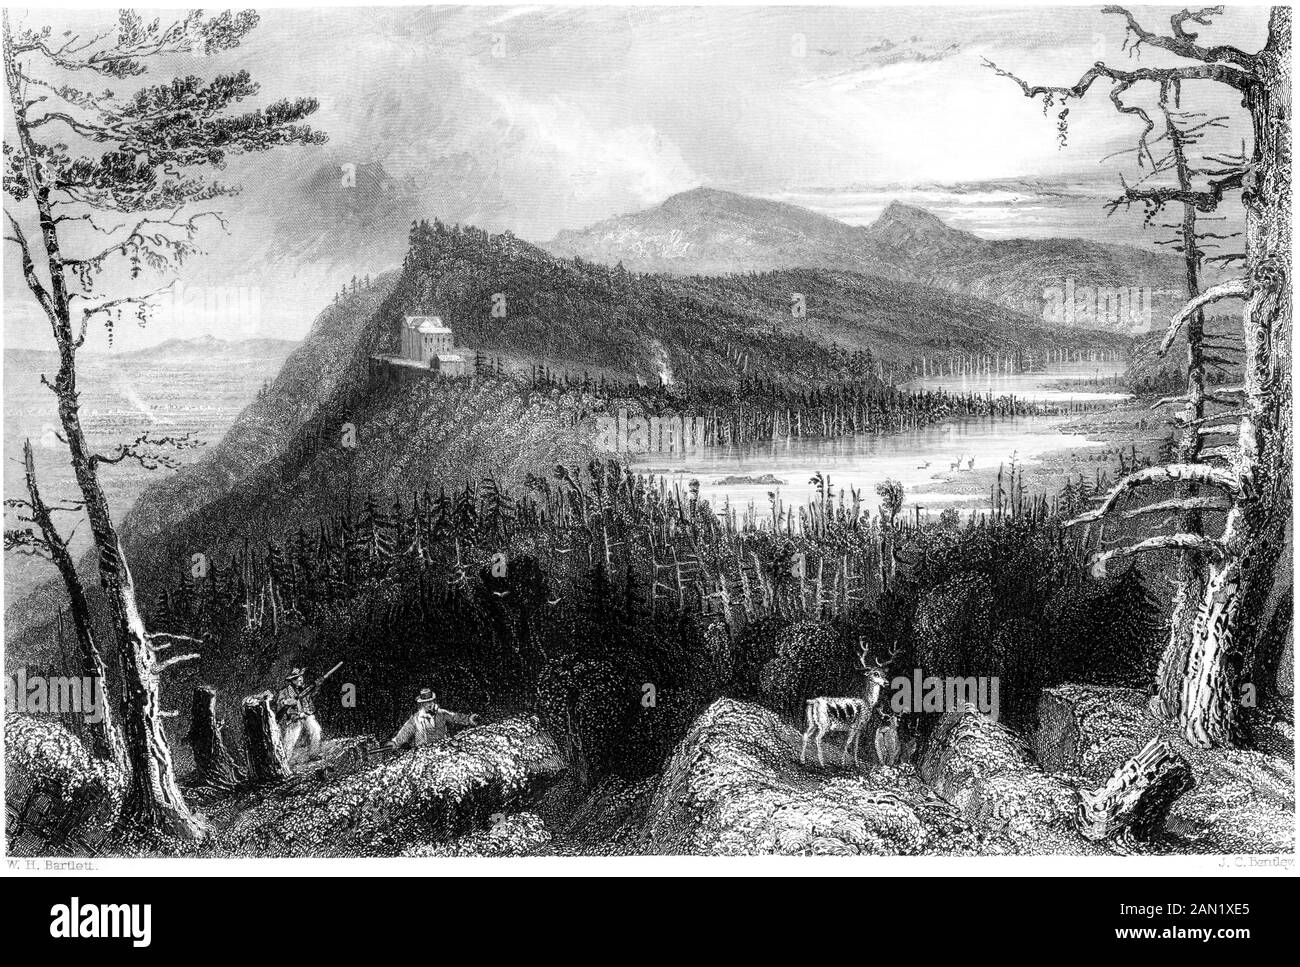 Gravure des Deux Lacs et le Mountain House sur les Catskills numérisées à haute résolution. à partir d'un livre imprimé en 1840. Croyait libres de droit. Banque D'Images